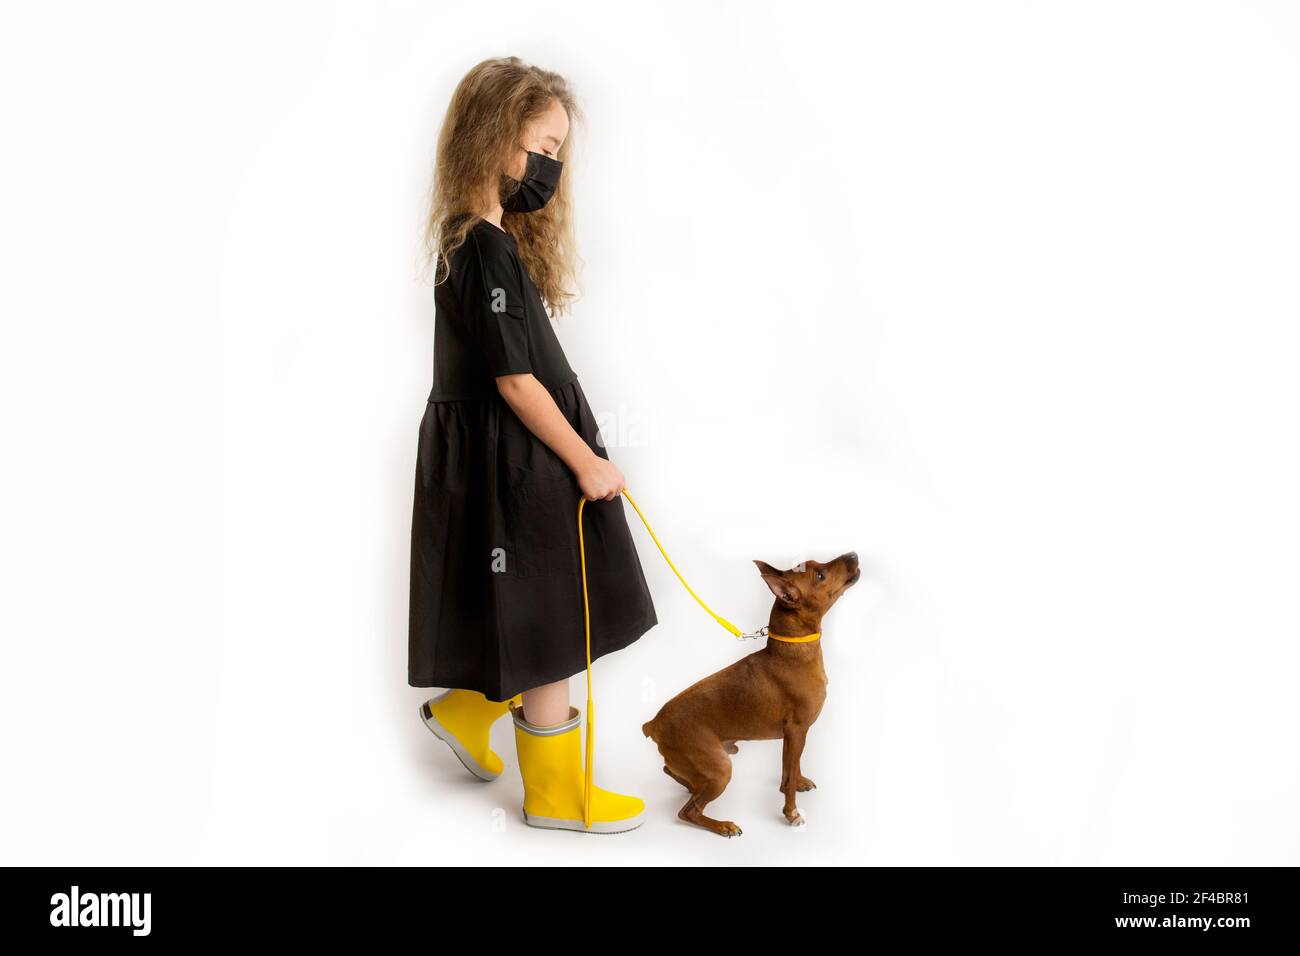 Une fille dans un masque antiviral protecteur noir marche le chien. Nouvelle réalité de la vie durant la pandémie COVID-19. Banque D'Images